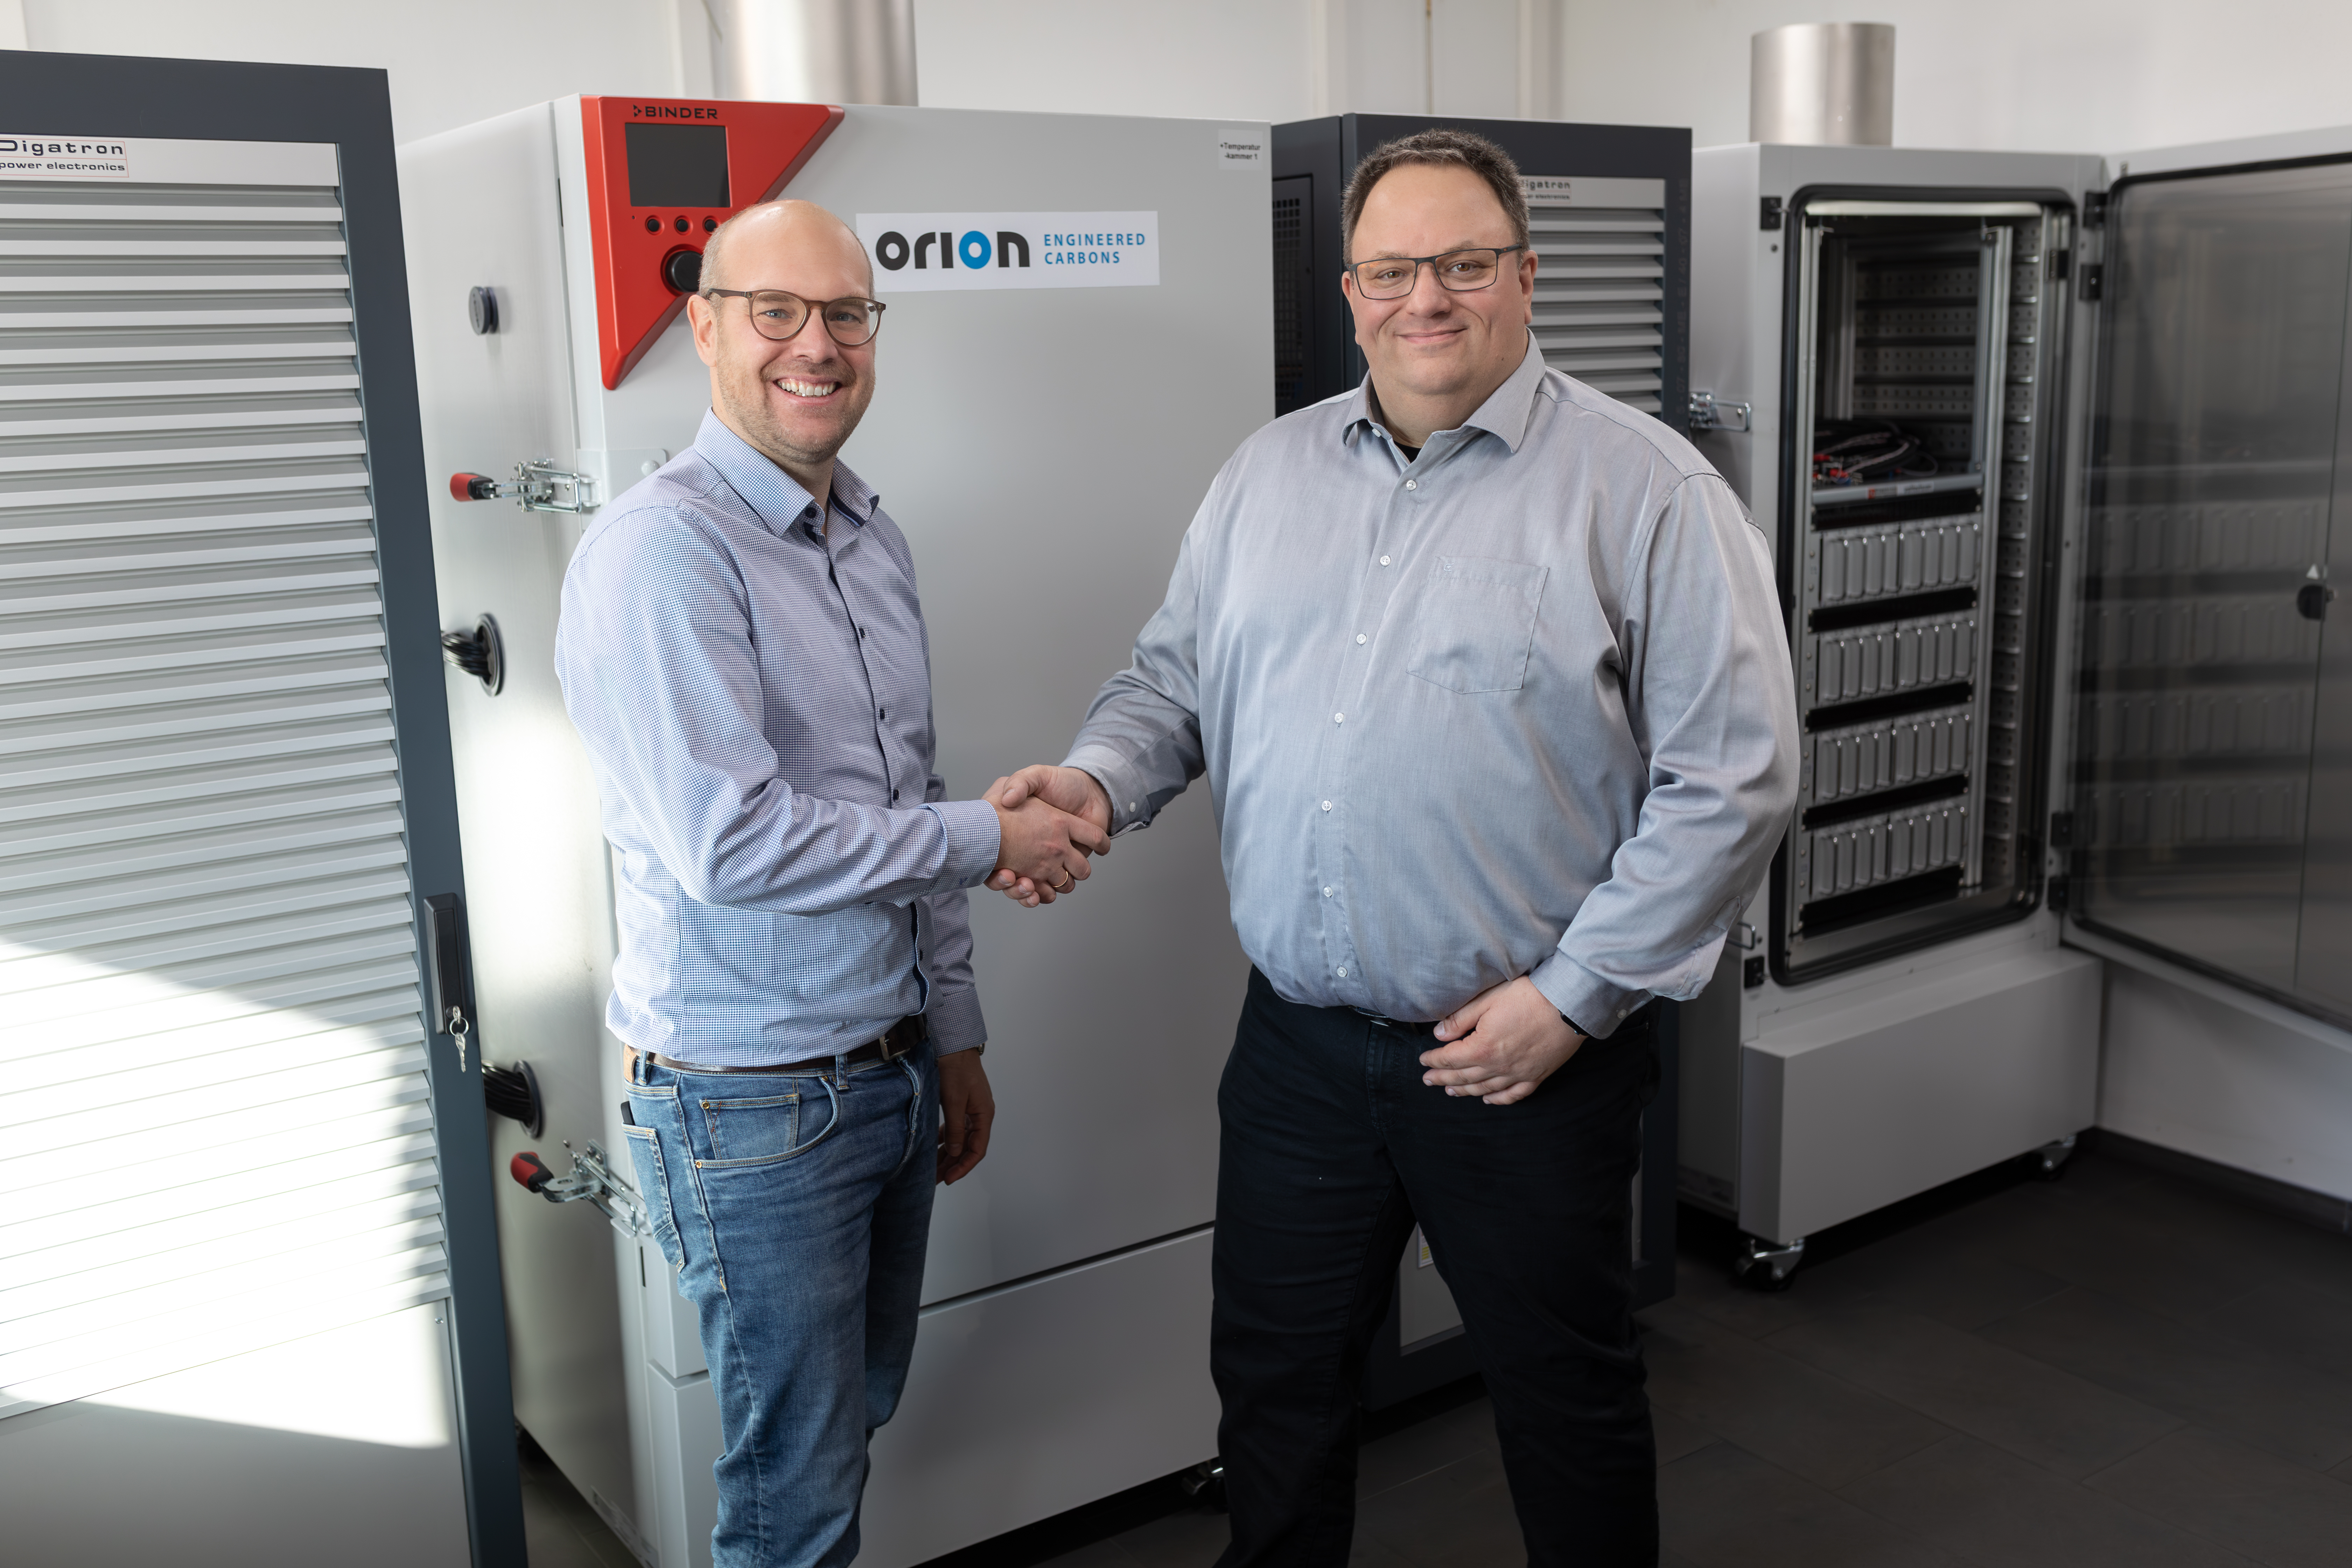 Digatron & Orion zusammen im Bild (von links nach rechts): Martin Hennebrüder (Projekt Manager - Digatron Power Electronics), Dr. Dietmar Jansen (Chemist Energy Systems - Orion)